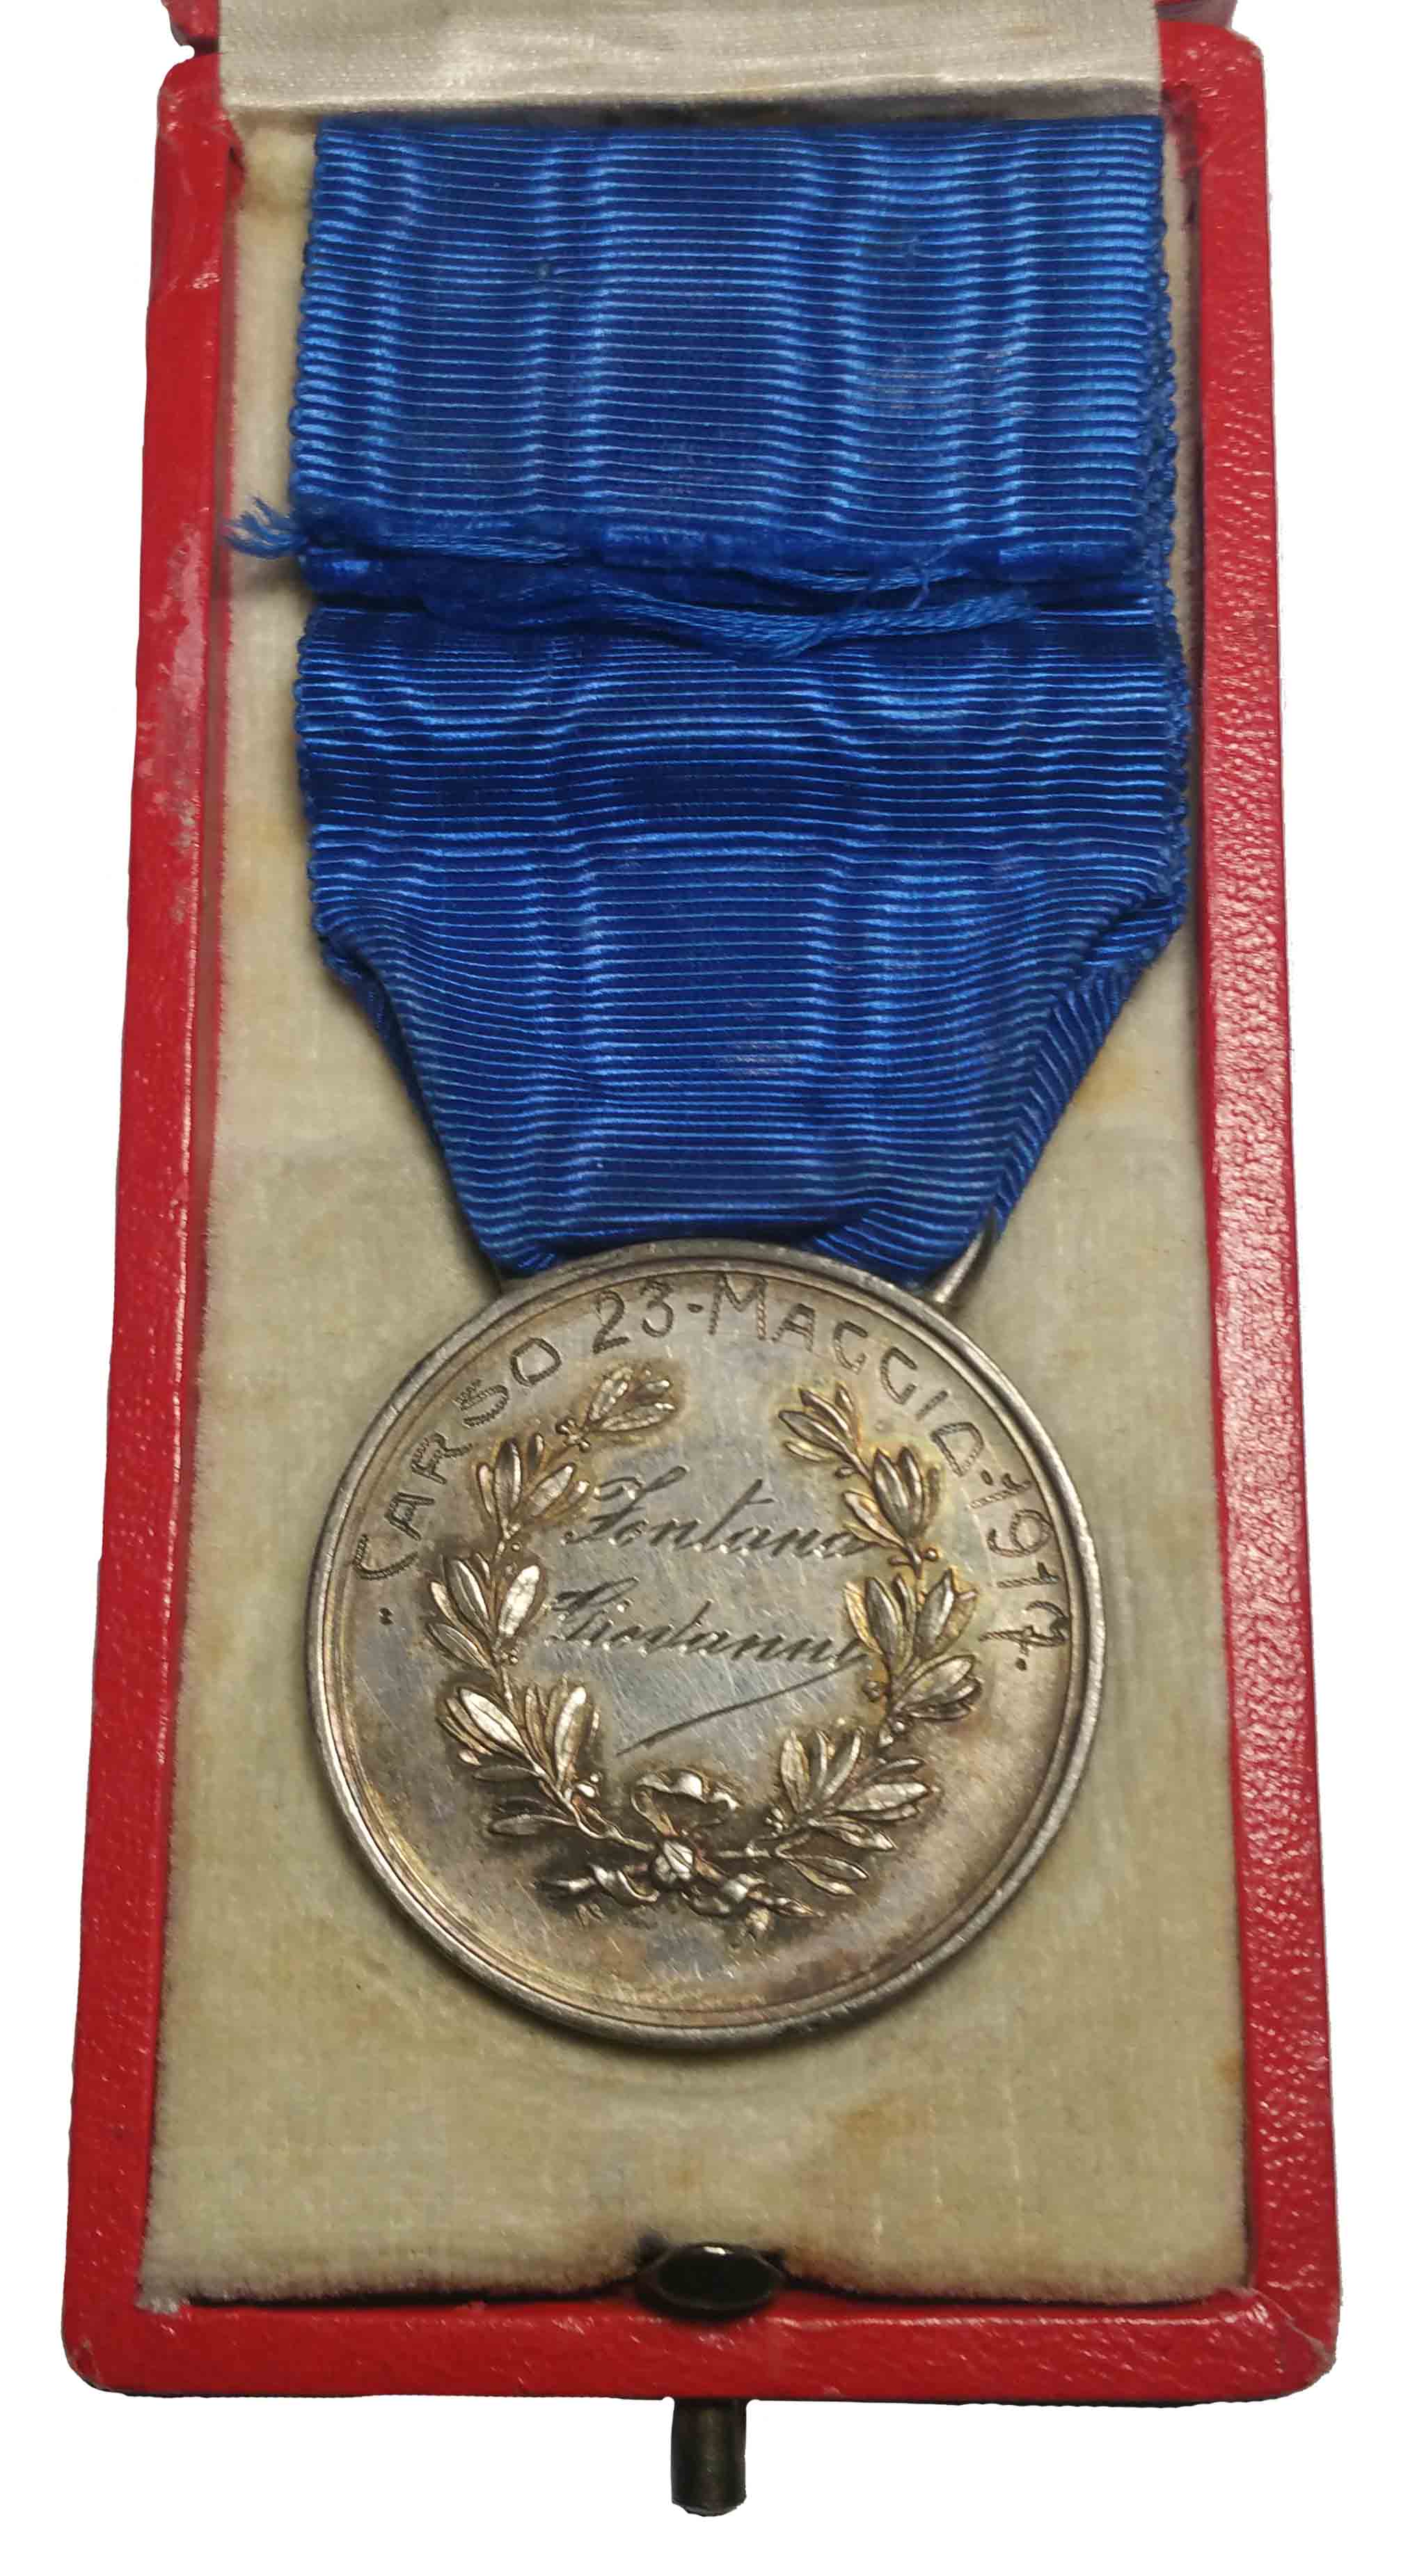 Medaglia d'argento Valore Militare